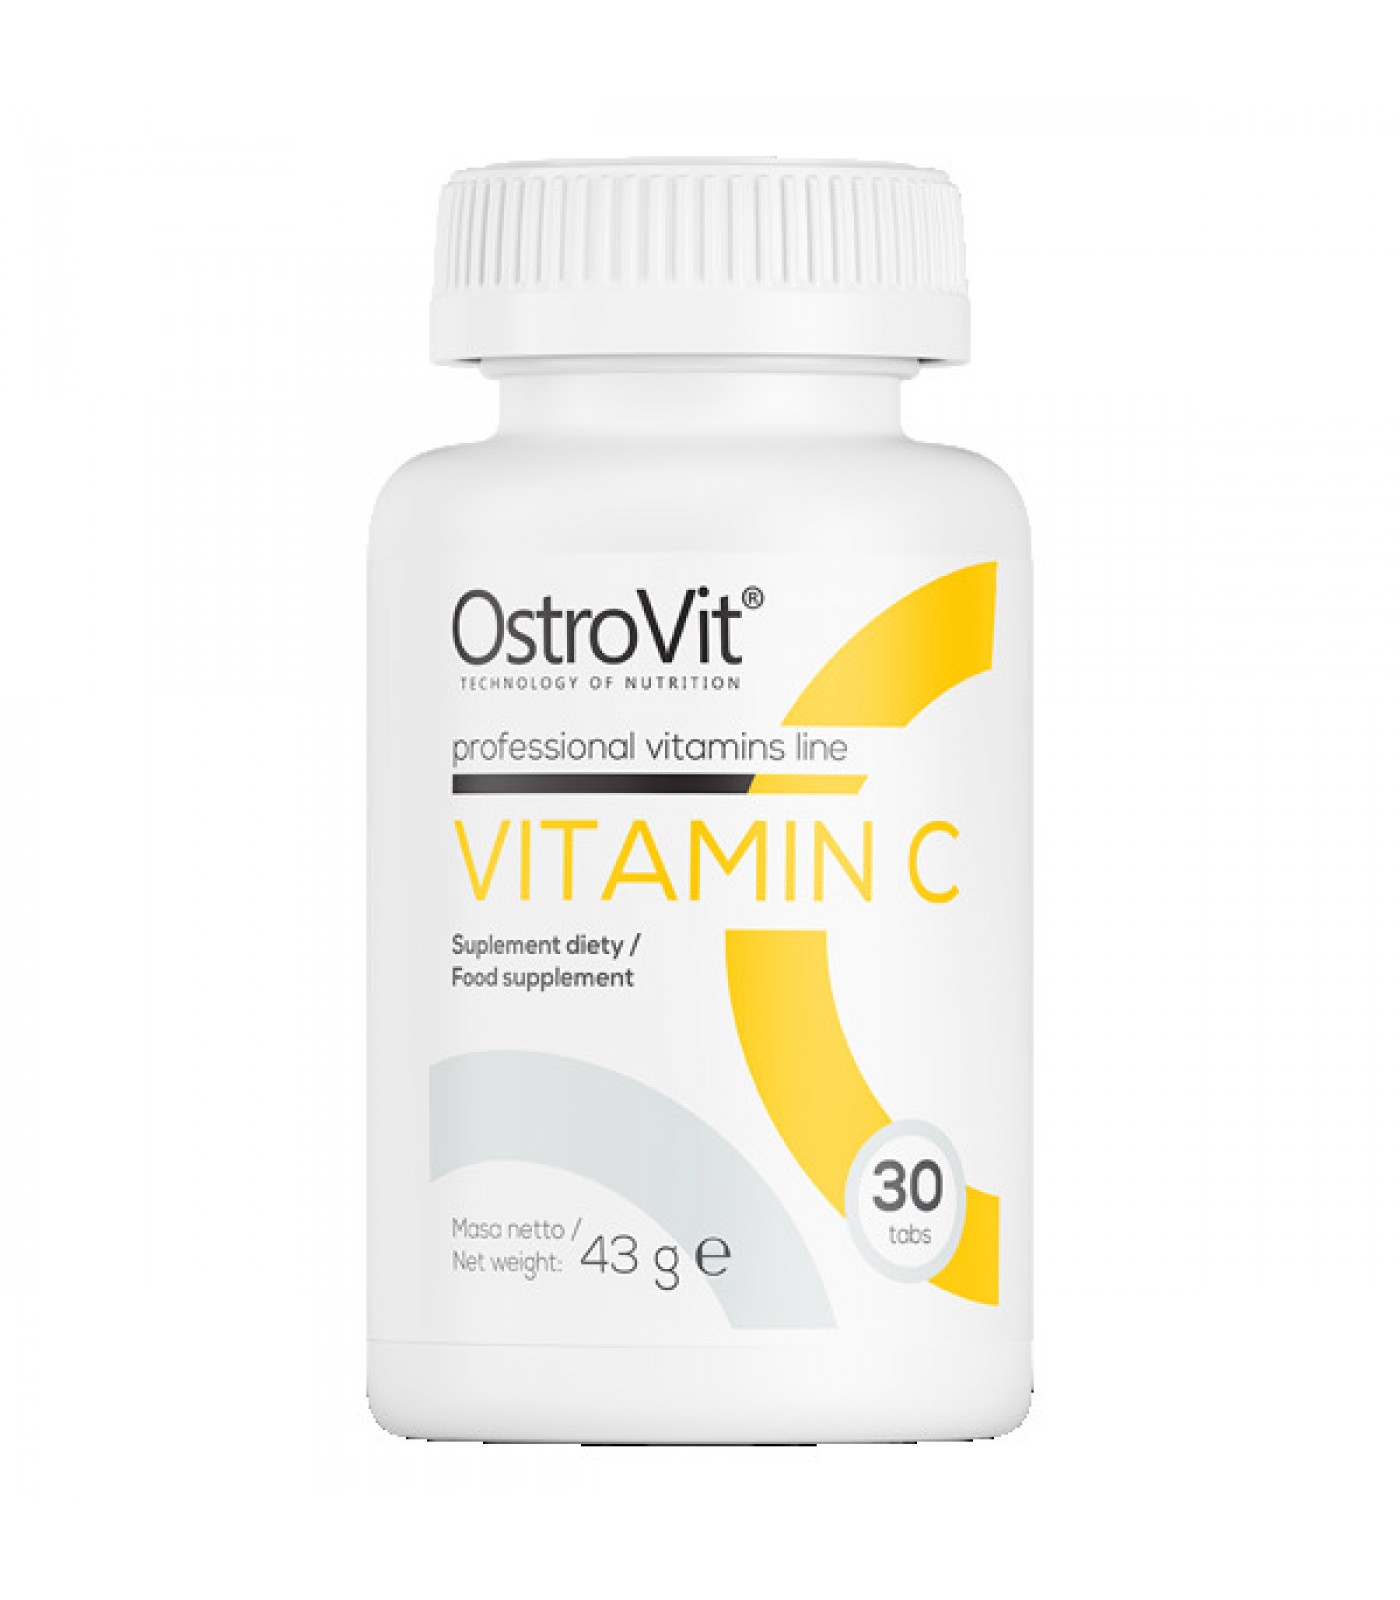 OstroVit - Vitamin C 1000 mg / 30tabs.